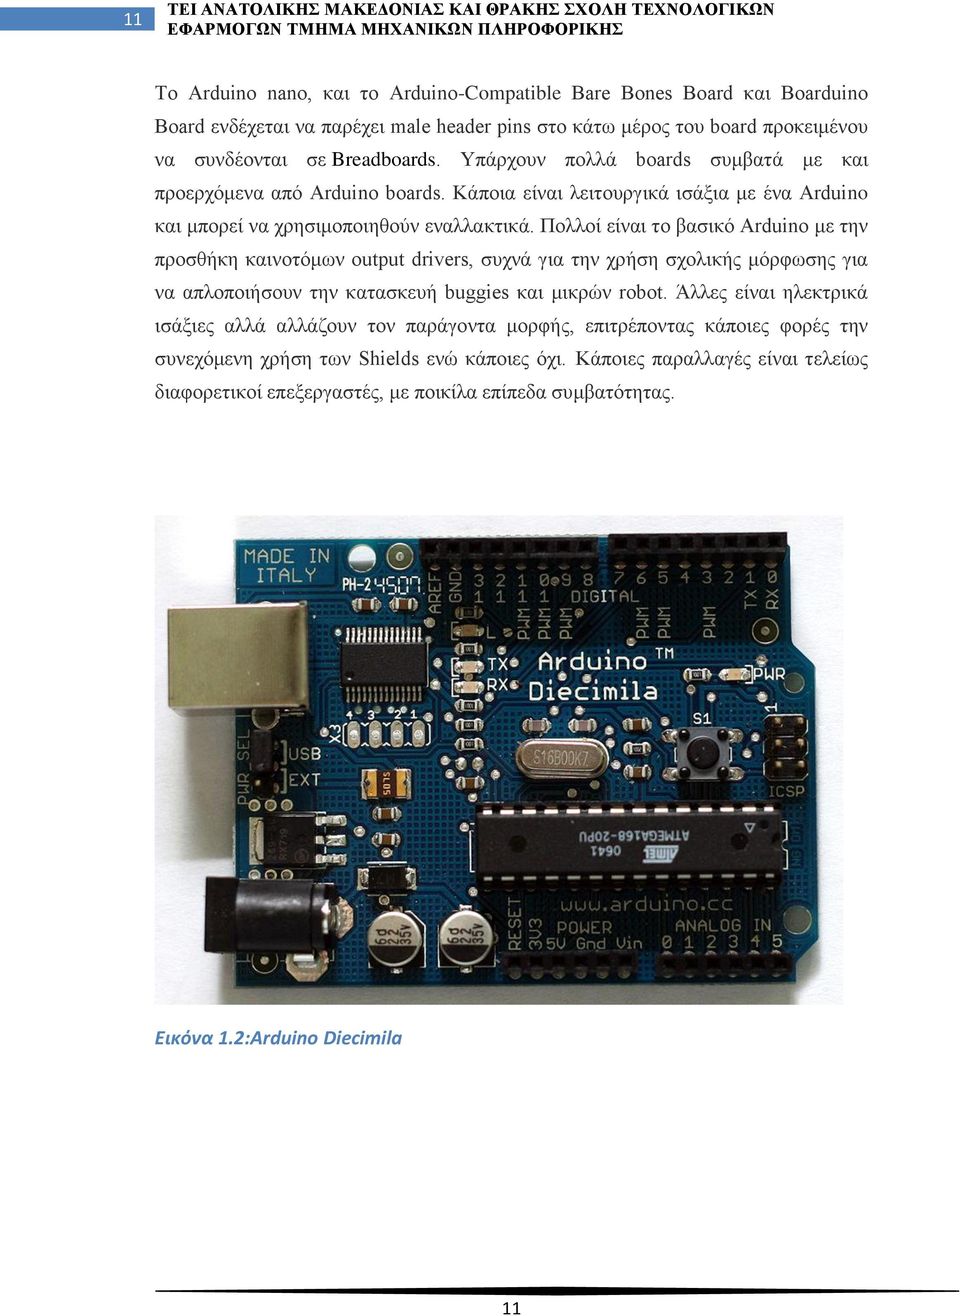 Πολλοί είναι το βασικό Arduino με την προσθήκη καινοτόμων output drivers, συχνά για την χρήση σχολικής μόρφωσης για να απλοποιήσουν την κατασκευή buggies και μικρών robot.